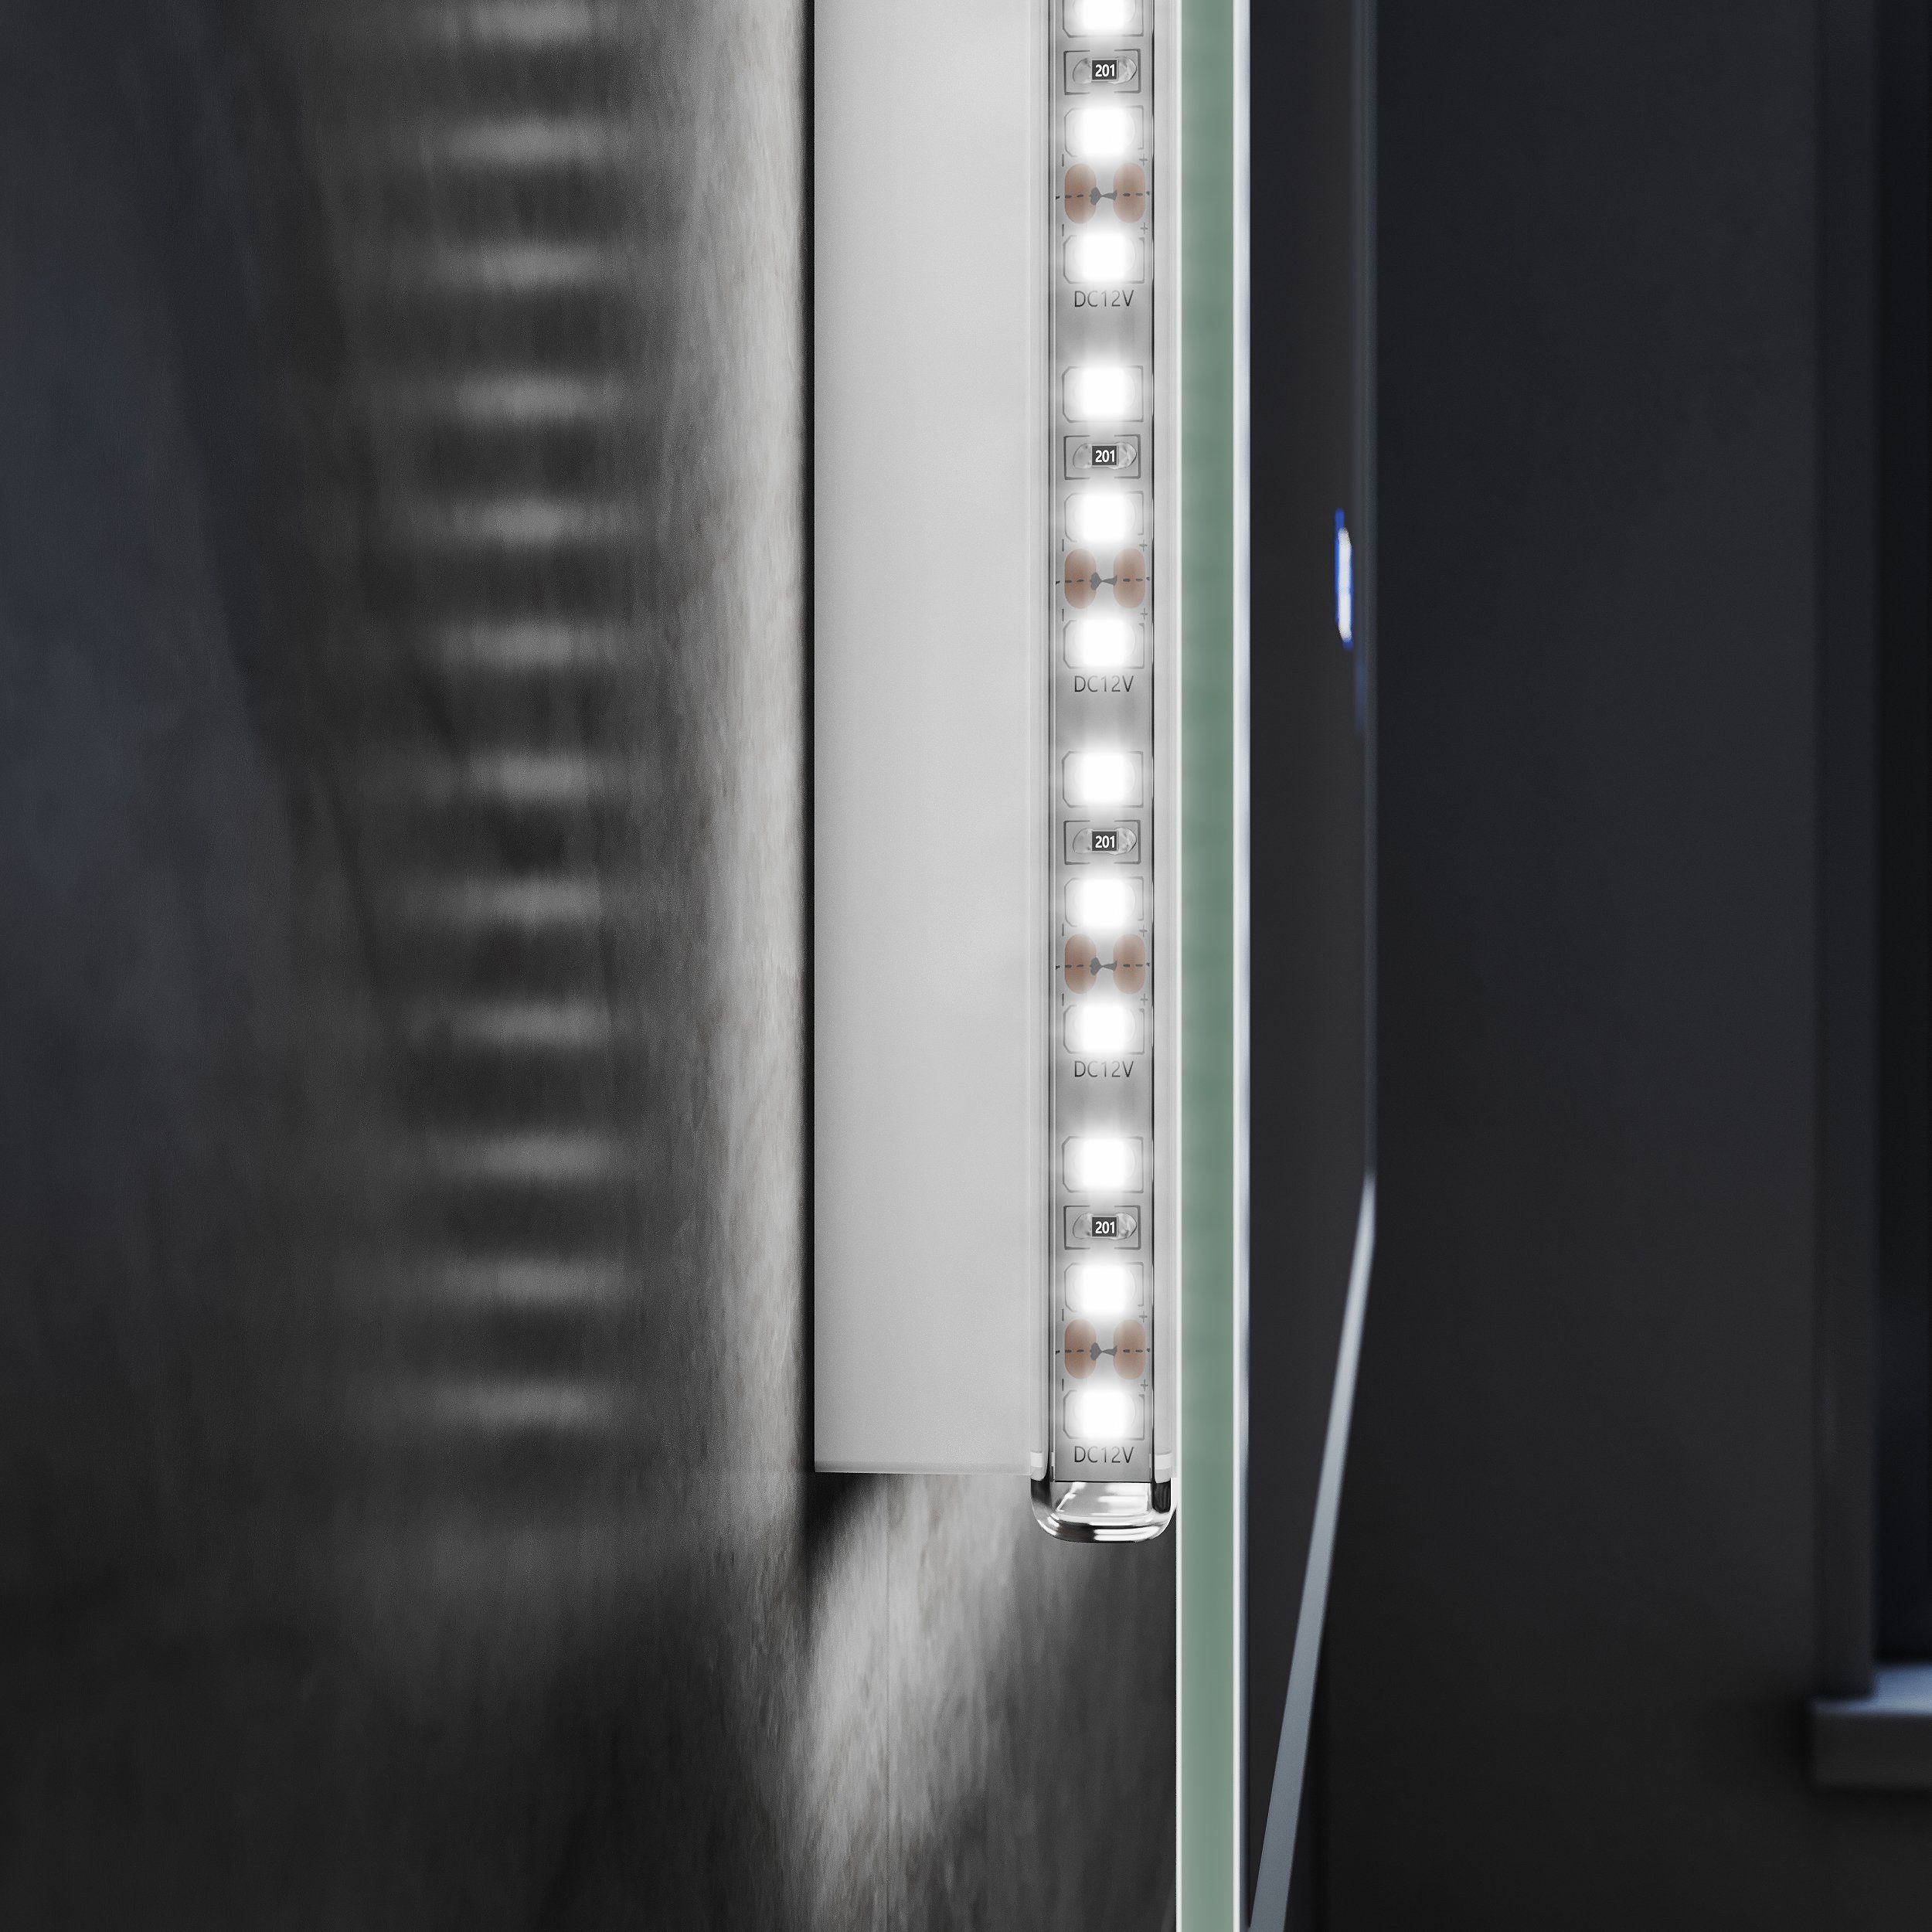 Vergrößerung,100/80cmx60cm, LED mit mit Badspiegel 3-facher SONNI Badezimmerspiegel